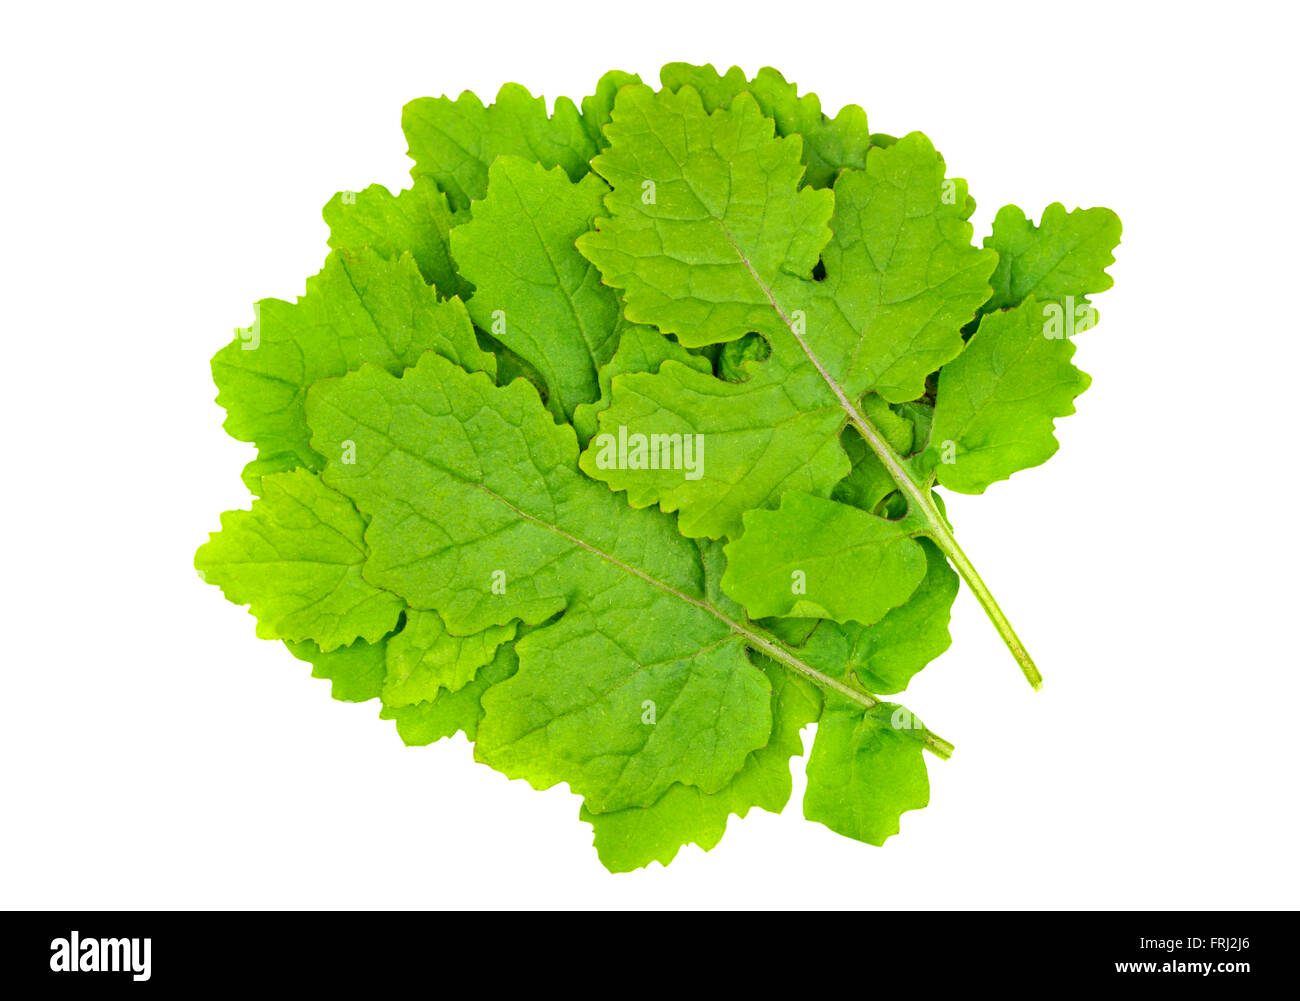 Senf Blätter auch weißer Senf, Sinapis Alba, Brassica Alba oder Brassica Hirta genannt und als eine kulinarische Zutat verwendet. Stockfoto